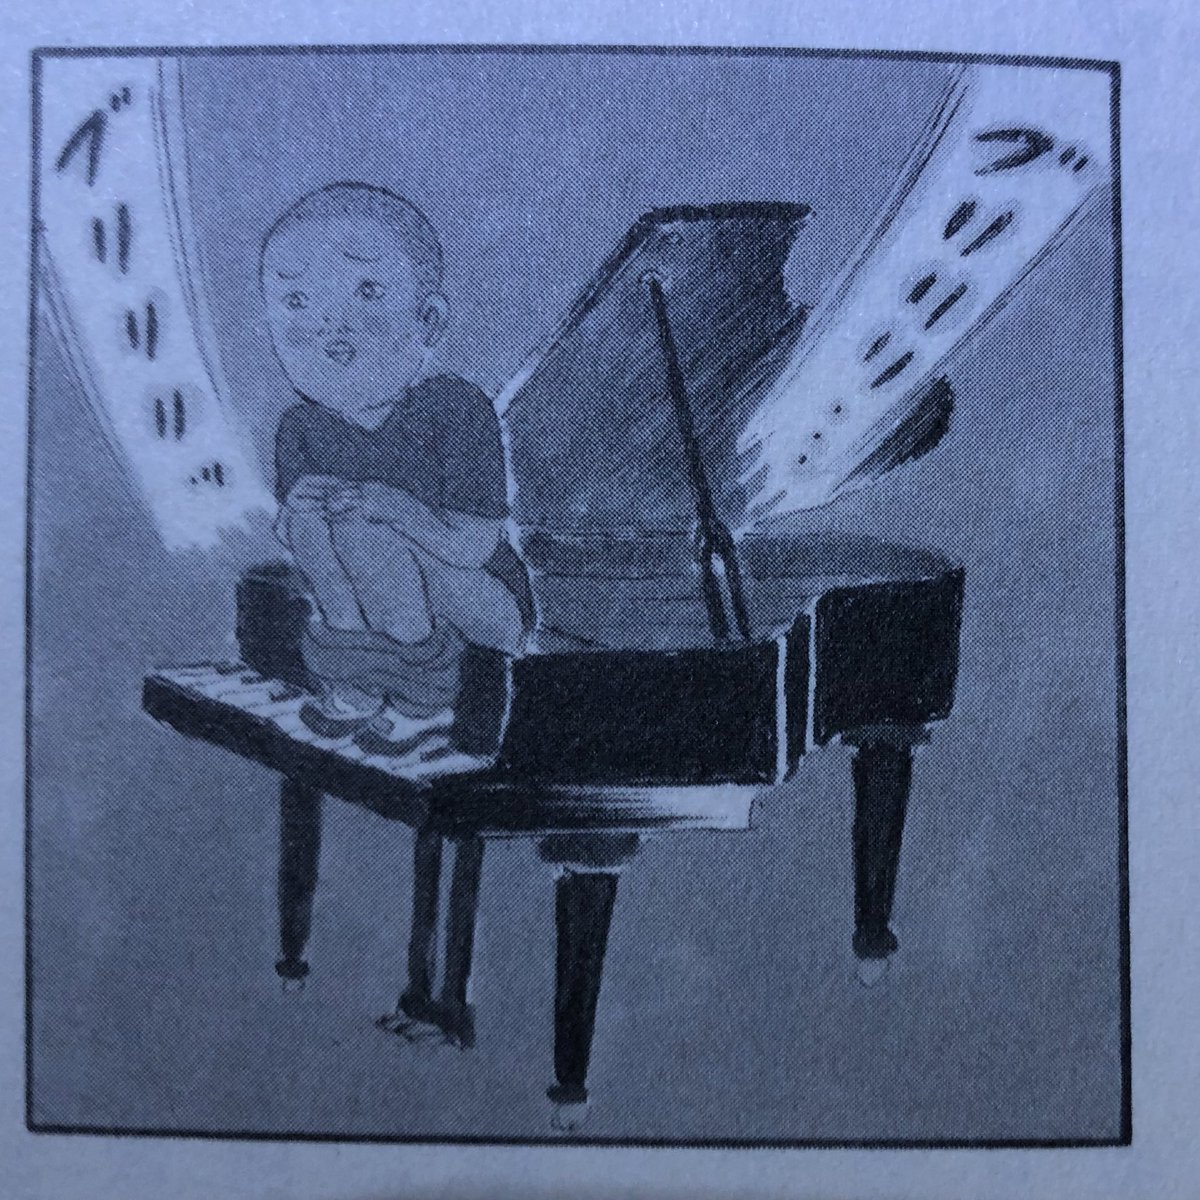 1コマ漫画で爆笑してしまう 清野とおるさんの挿絵  平山夢明「どうかと思うが、面白い」(扶桑社、2011年)